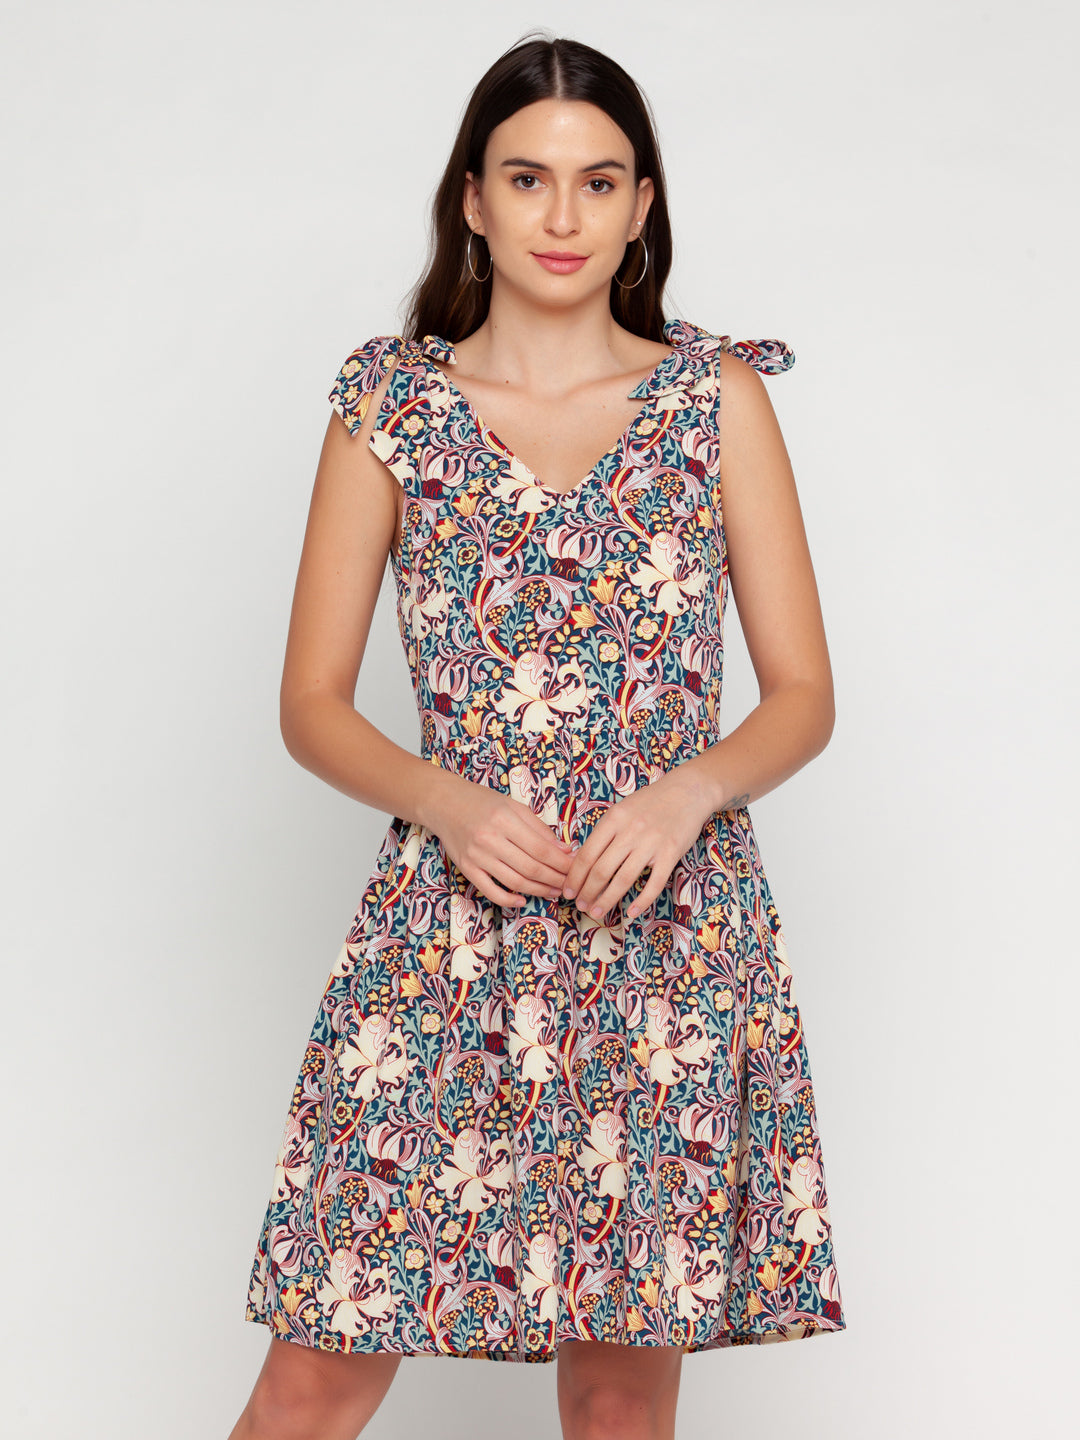 Blue-Floral-Printed-Regular-Short-Dress-VD02162-2